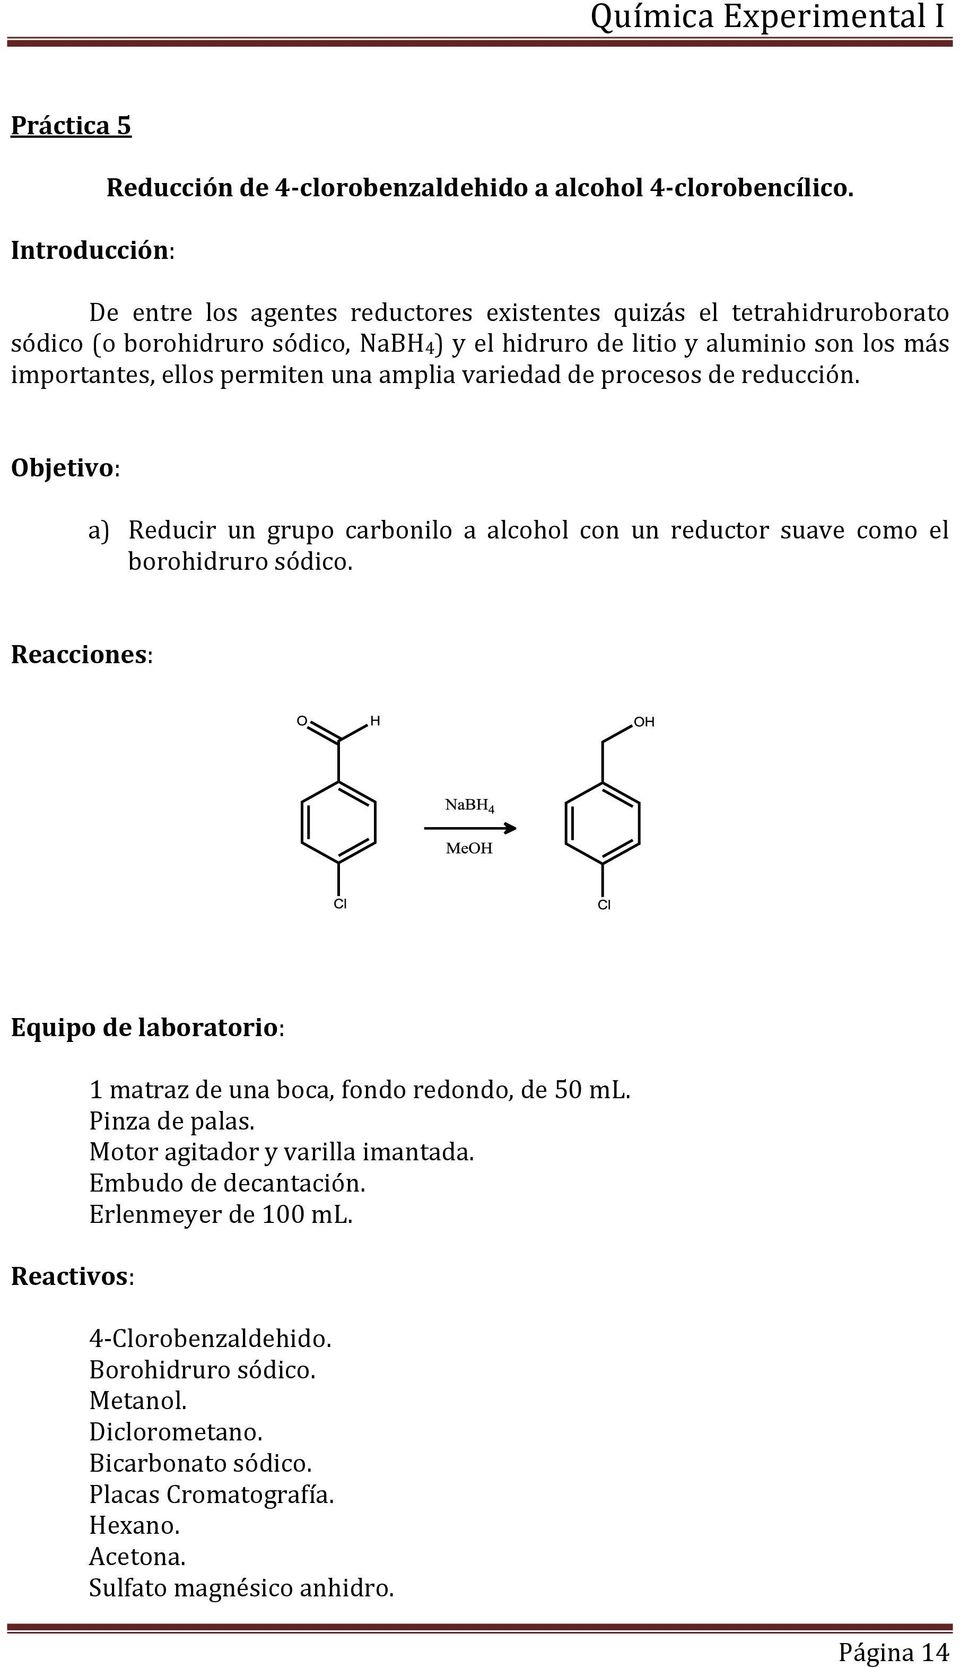 amplia variedad de procesos de reducción. Objetivo: a) Reducir un grupo carbonilo a alcohol con un reductor suave como el borohidruro sódico.